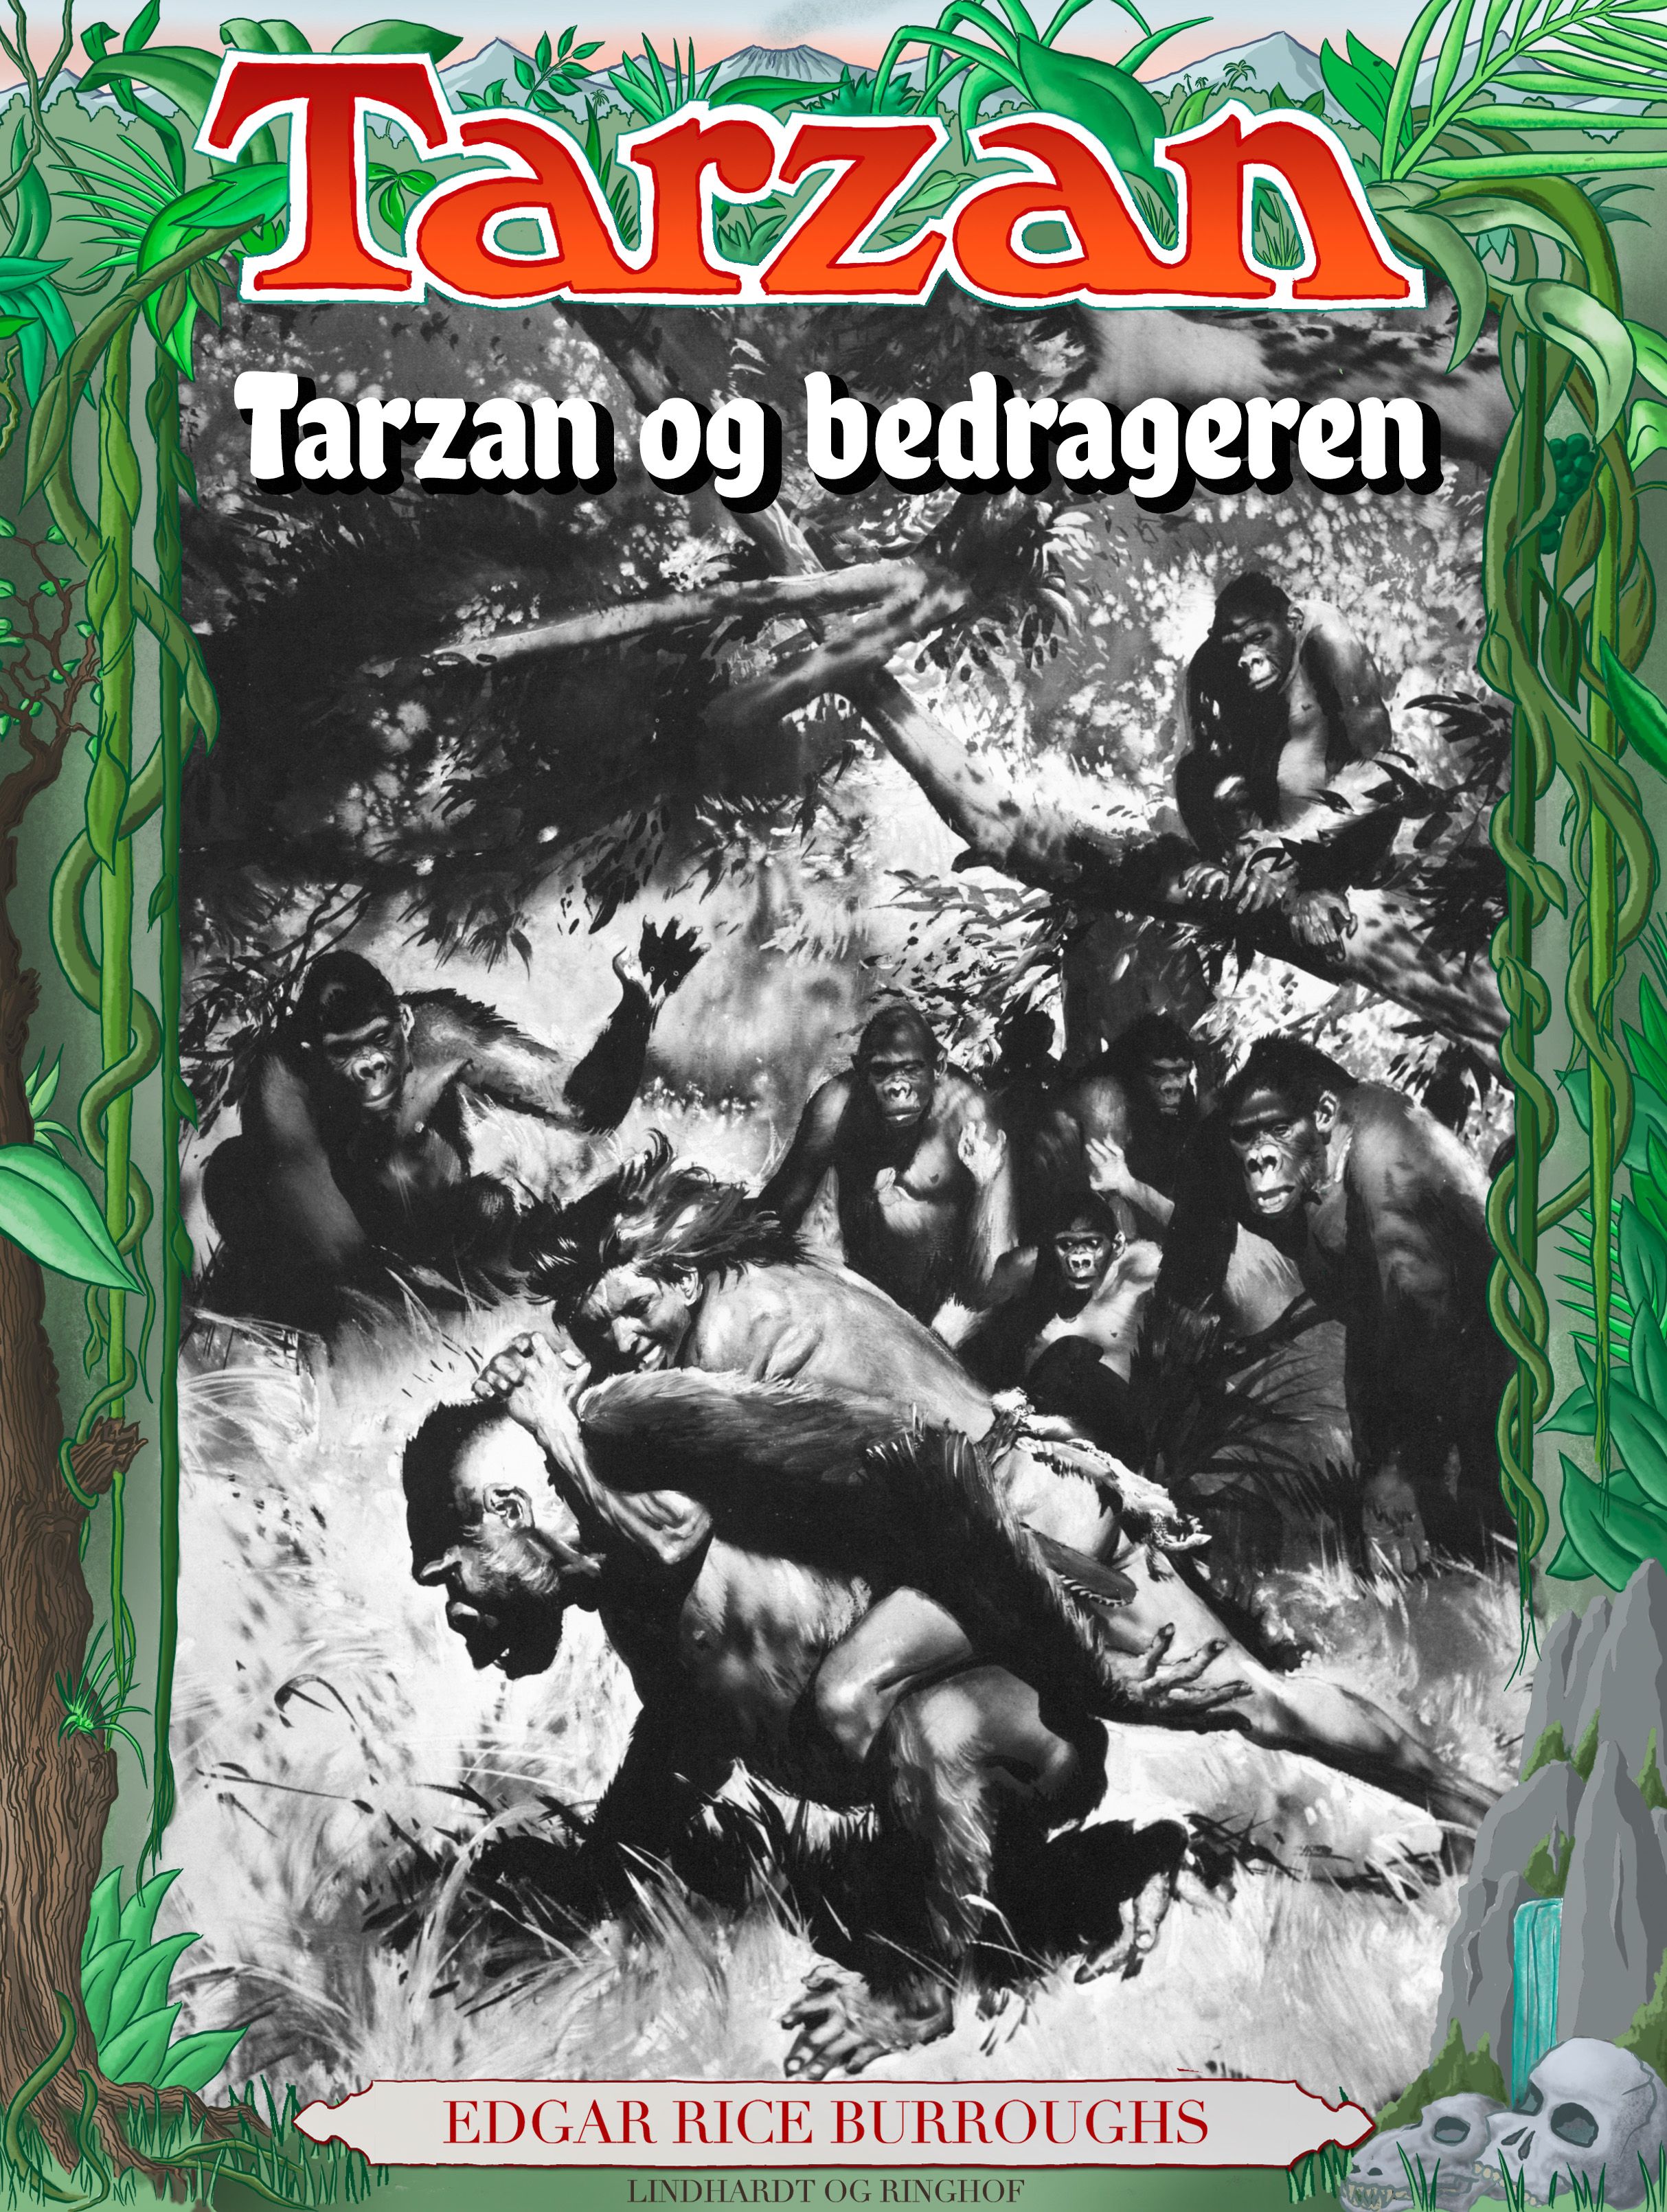 Tarzan og bedrageren, e-bok av Edgar Rice Burroughs